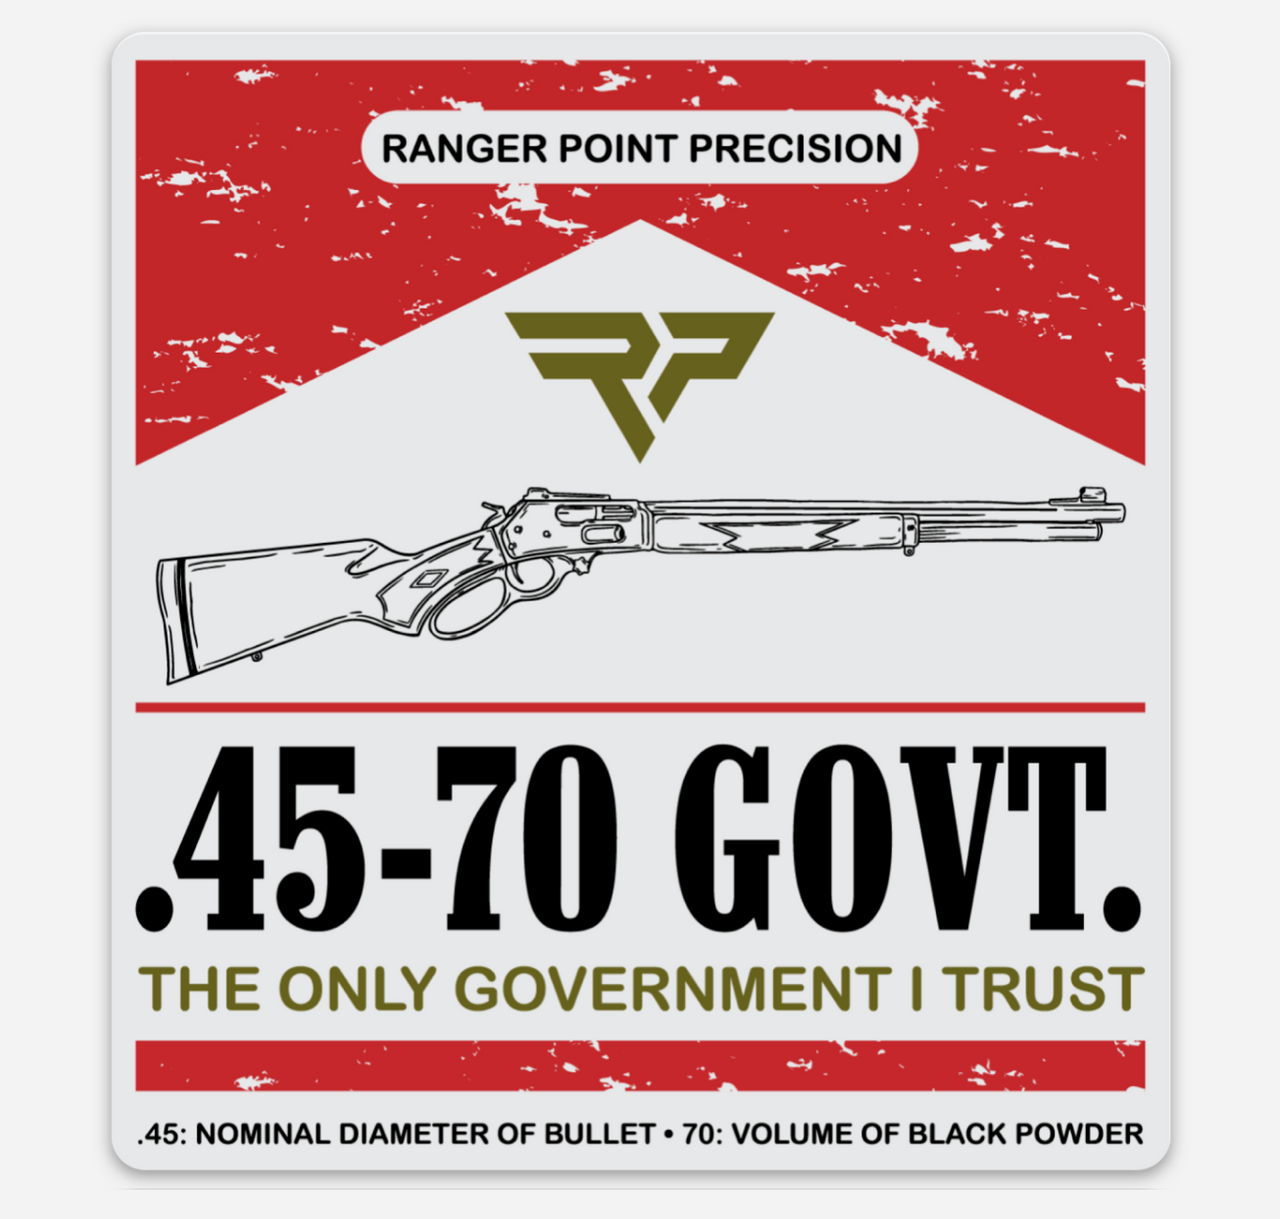 Ranger Point 45-70 GOVT Slap Stickers